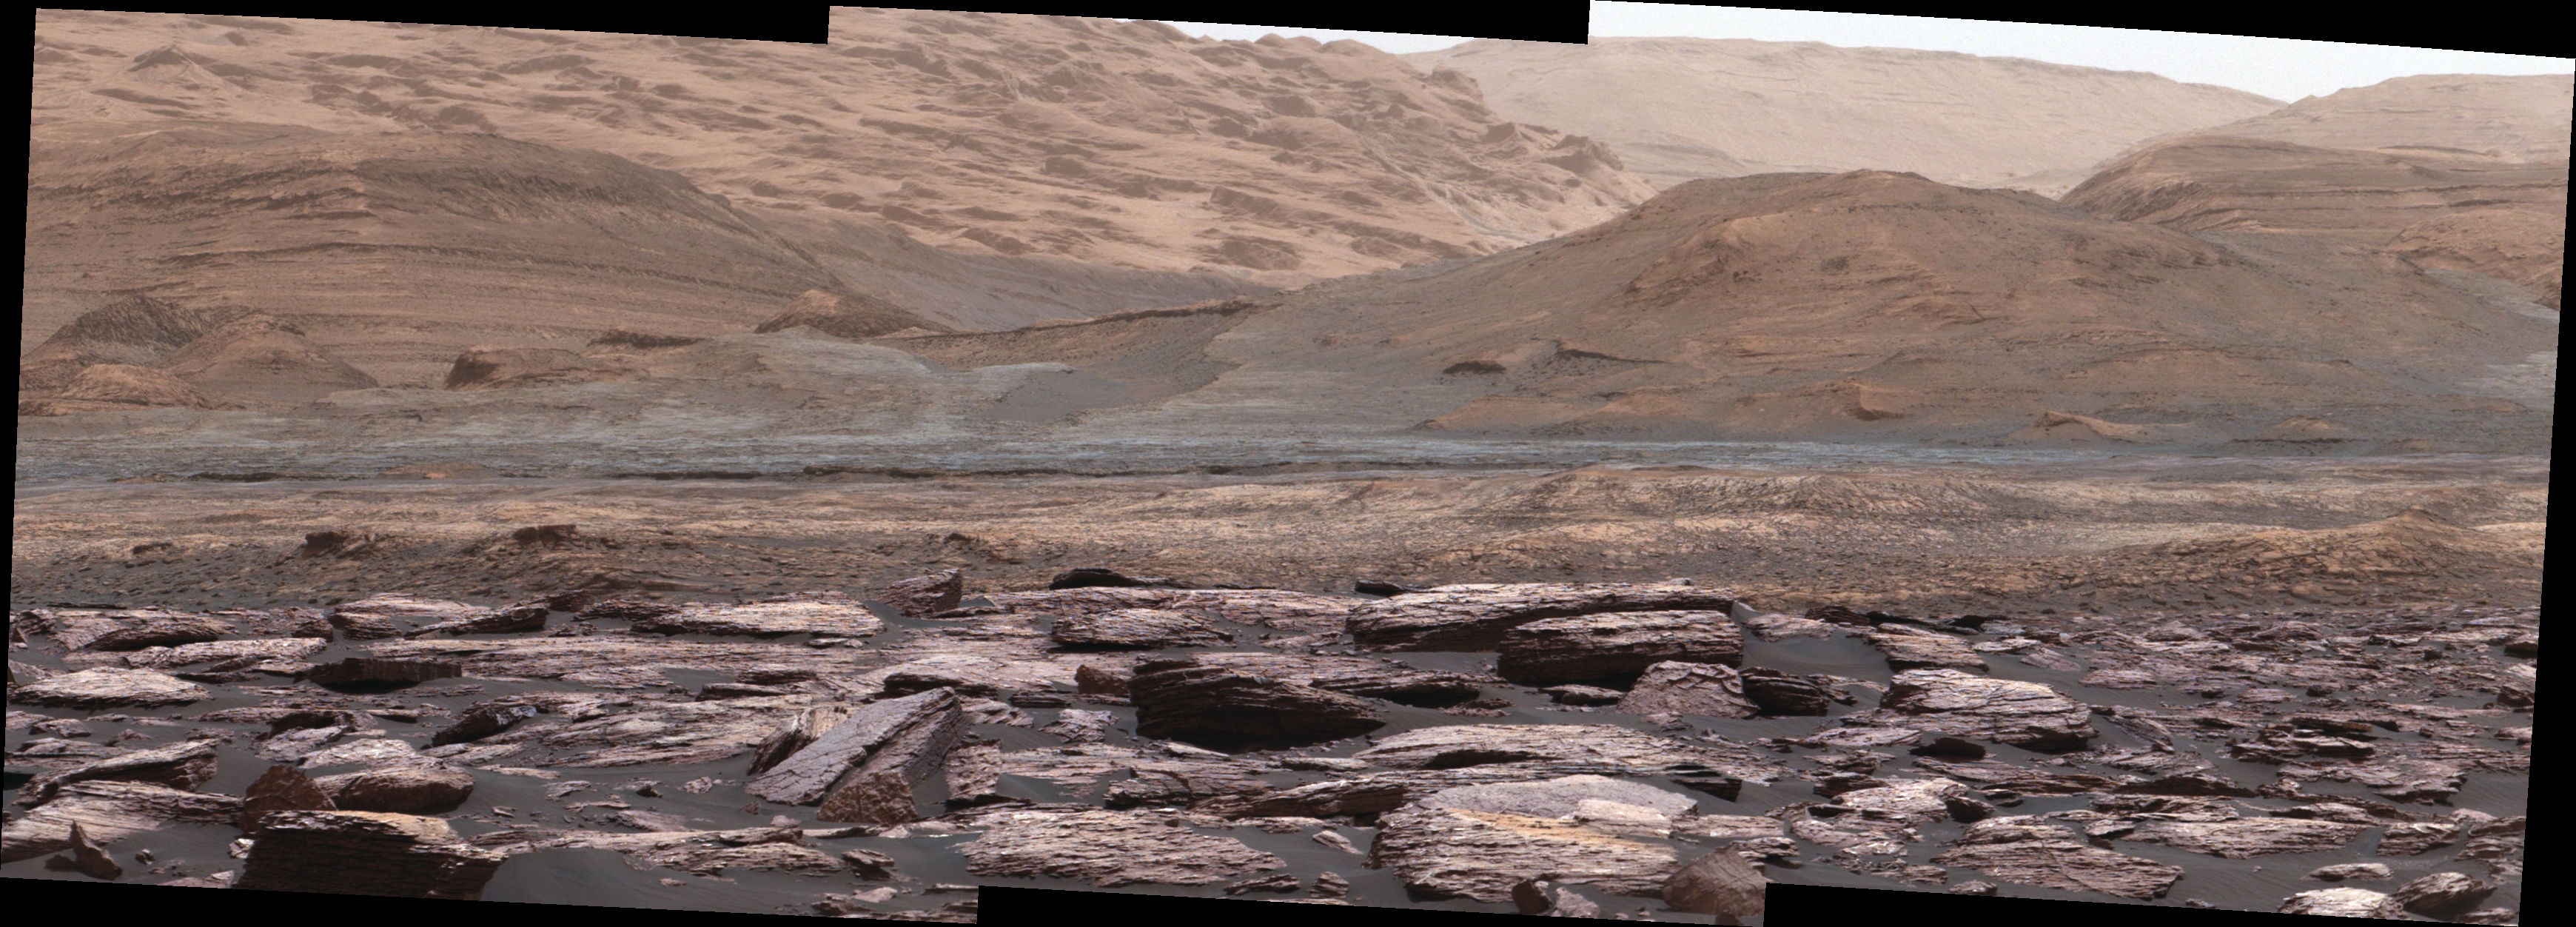 Обнаружены пурпурные камни на Марсе